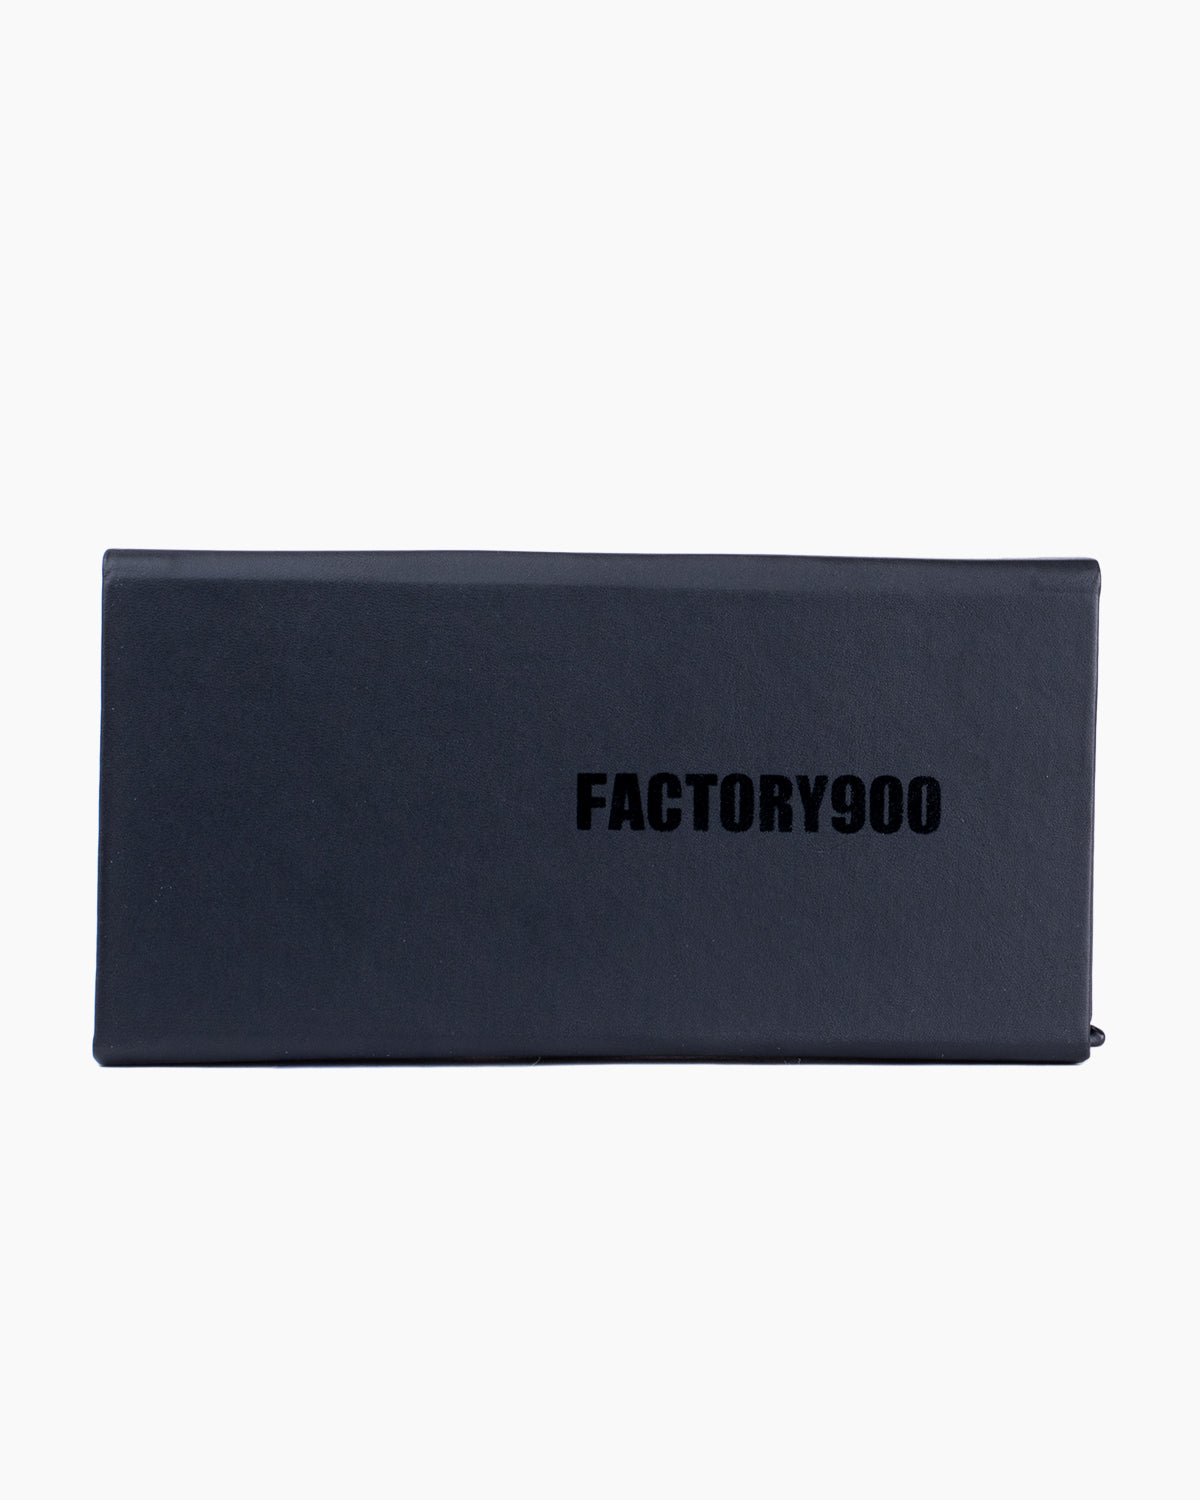 Factory 900 - Ai - 419 | Bar à lunettes